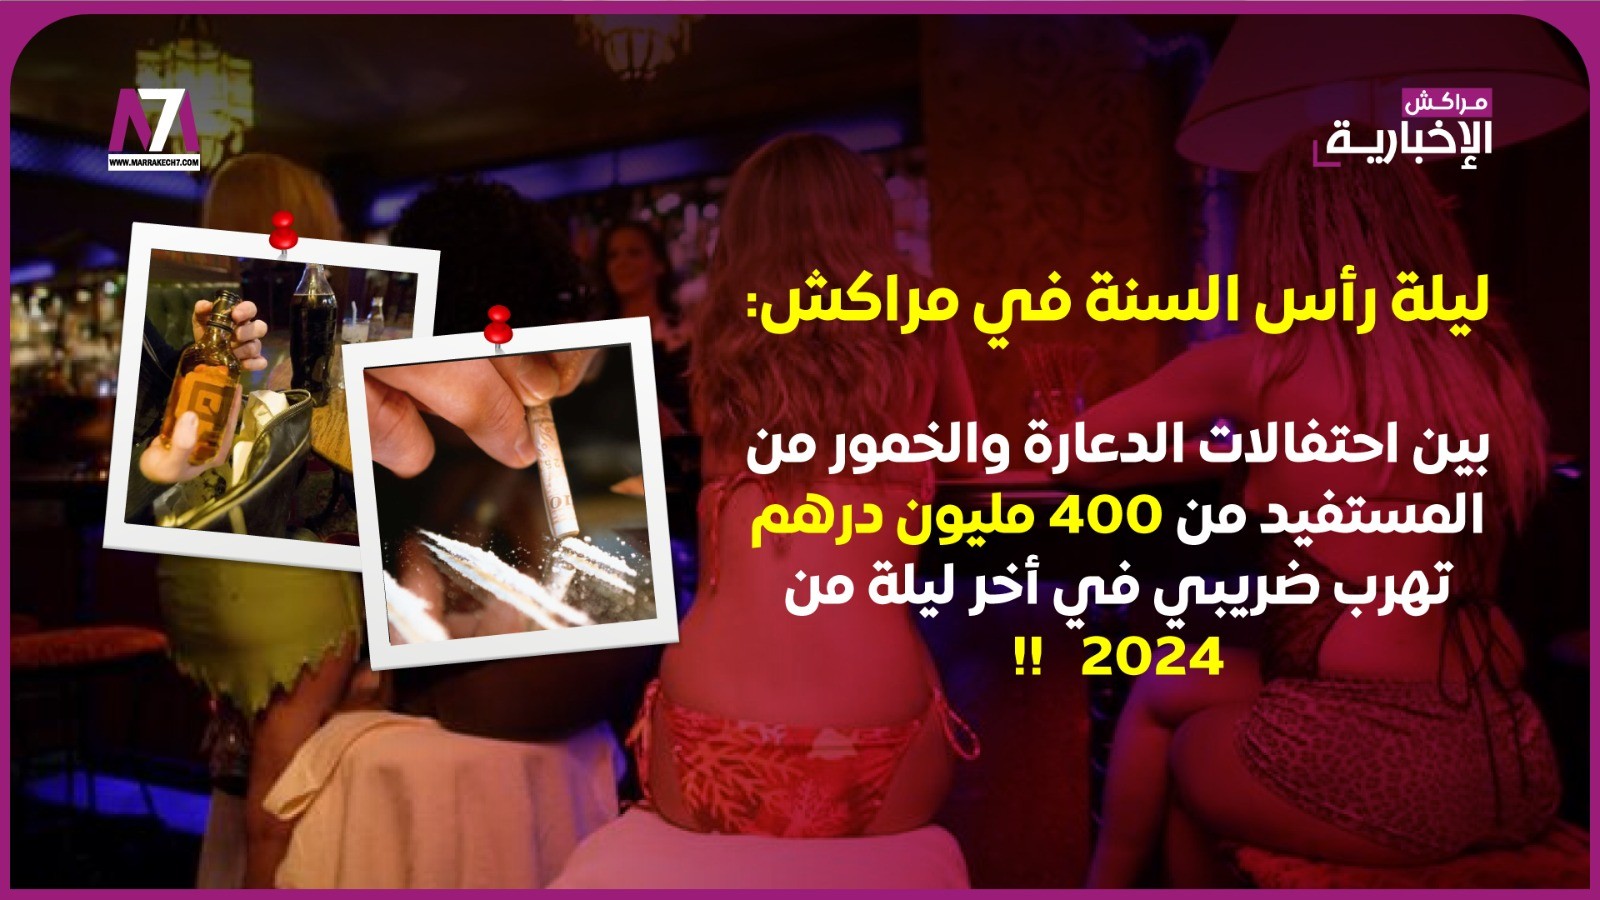 ليلة رأس السنة في مراكش: بين احتفالات الدعارة والخمور من المستفيد من 400 مليون درهم تهرب ضريبي في أخر ليلة من 2024   !!